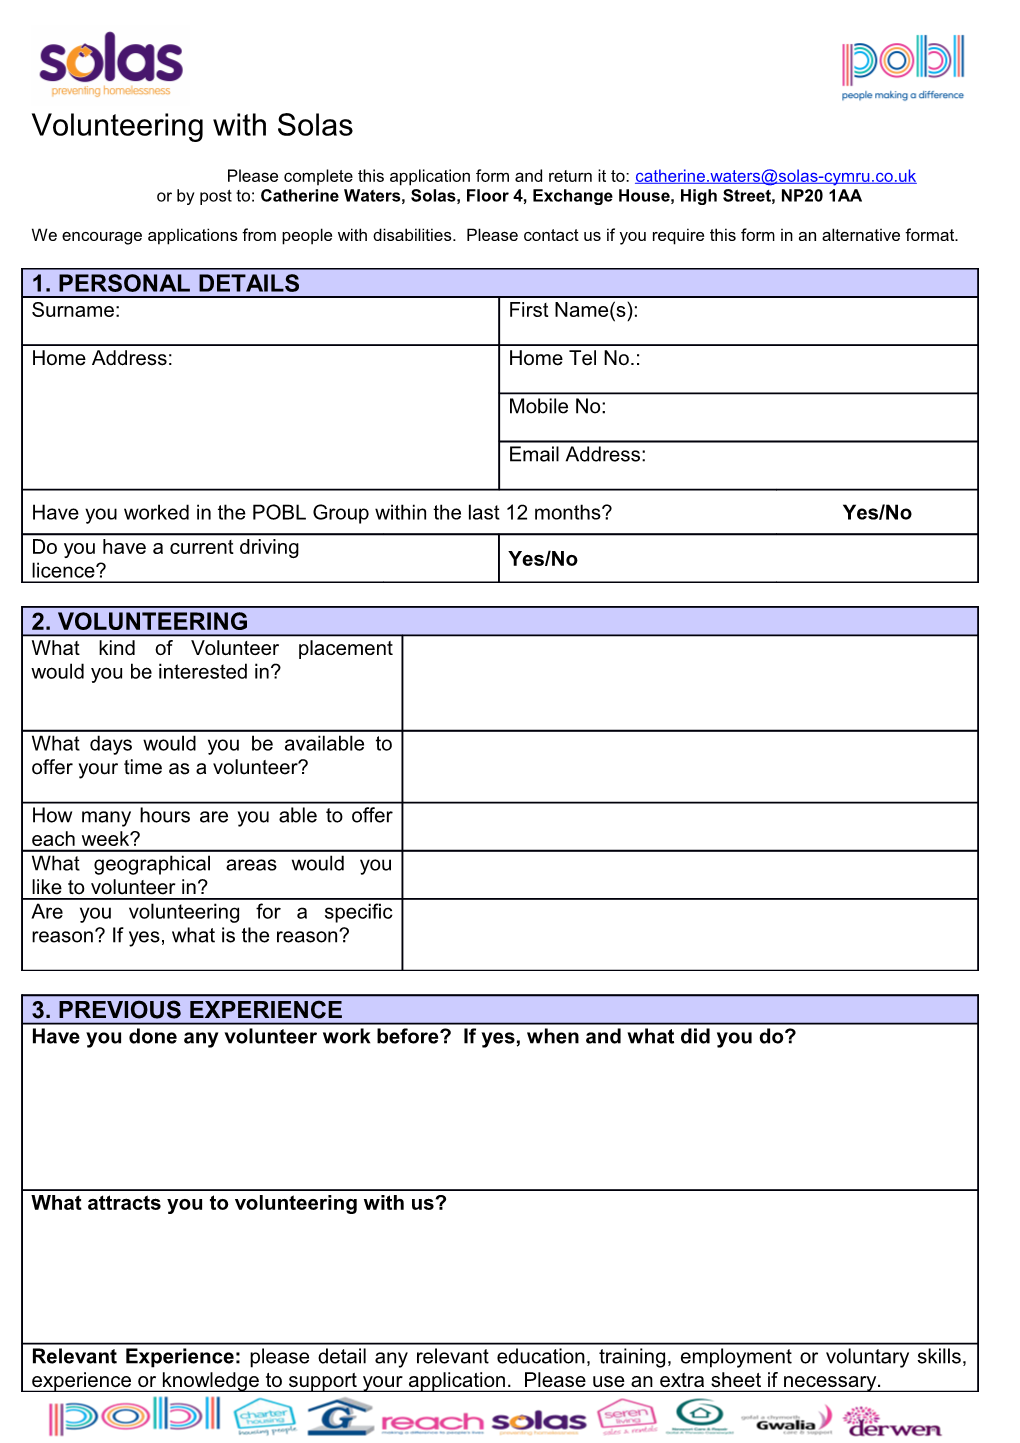 Job Application Form s16